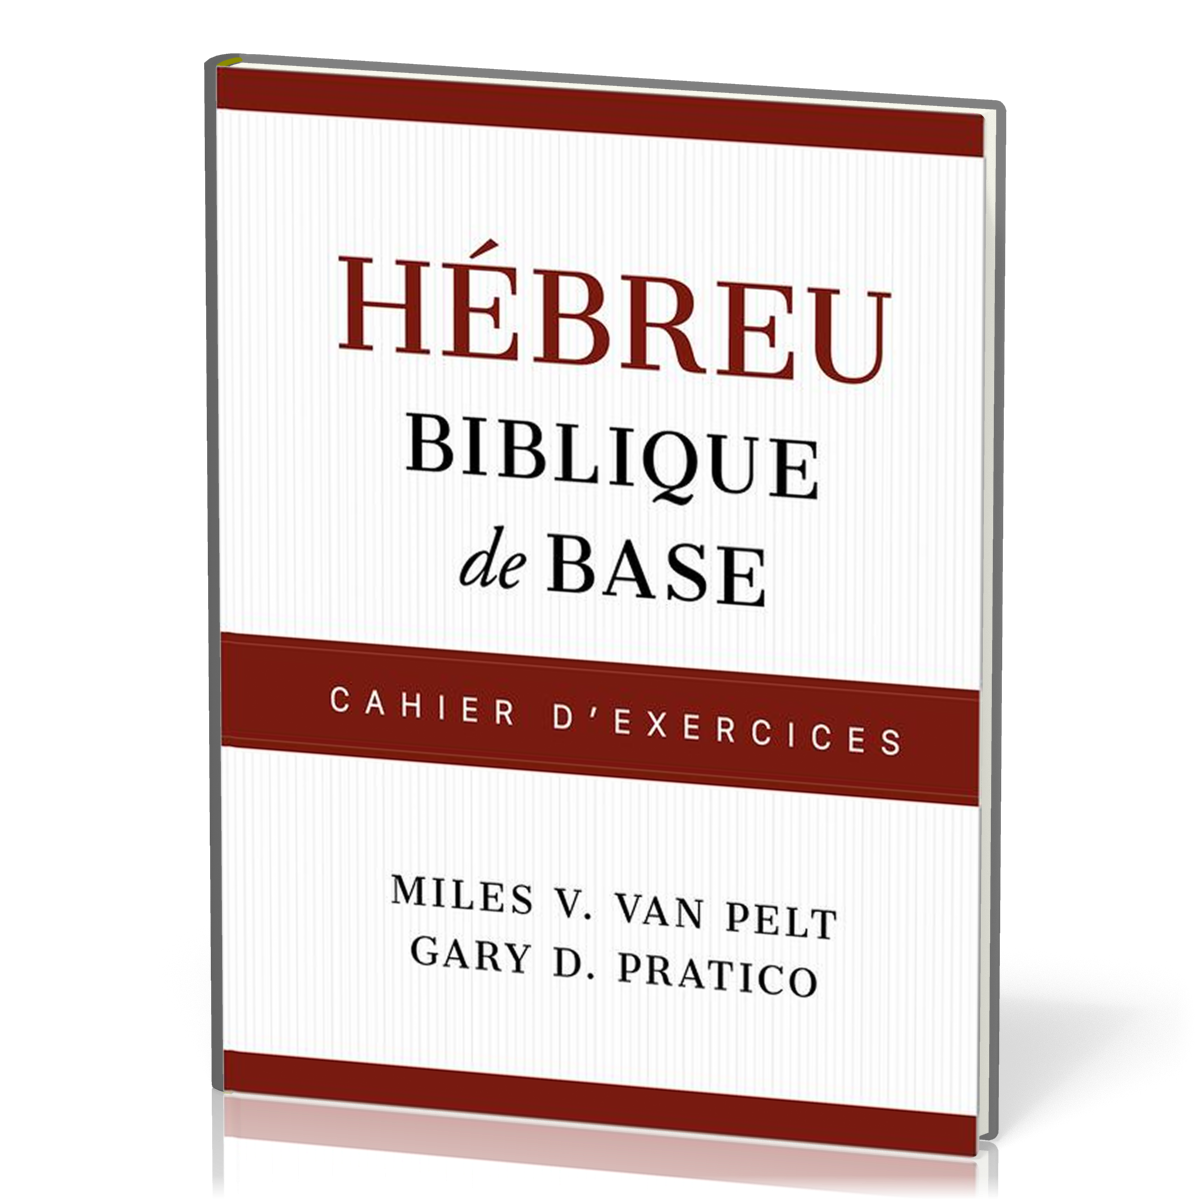 HEBREU BIBLIQUE DE BASE - CAHIER D'EXERCICES